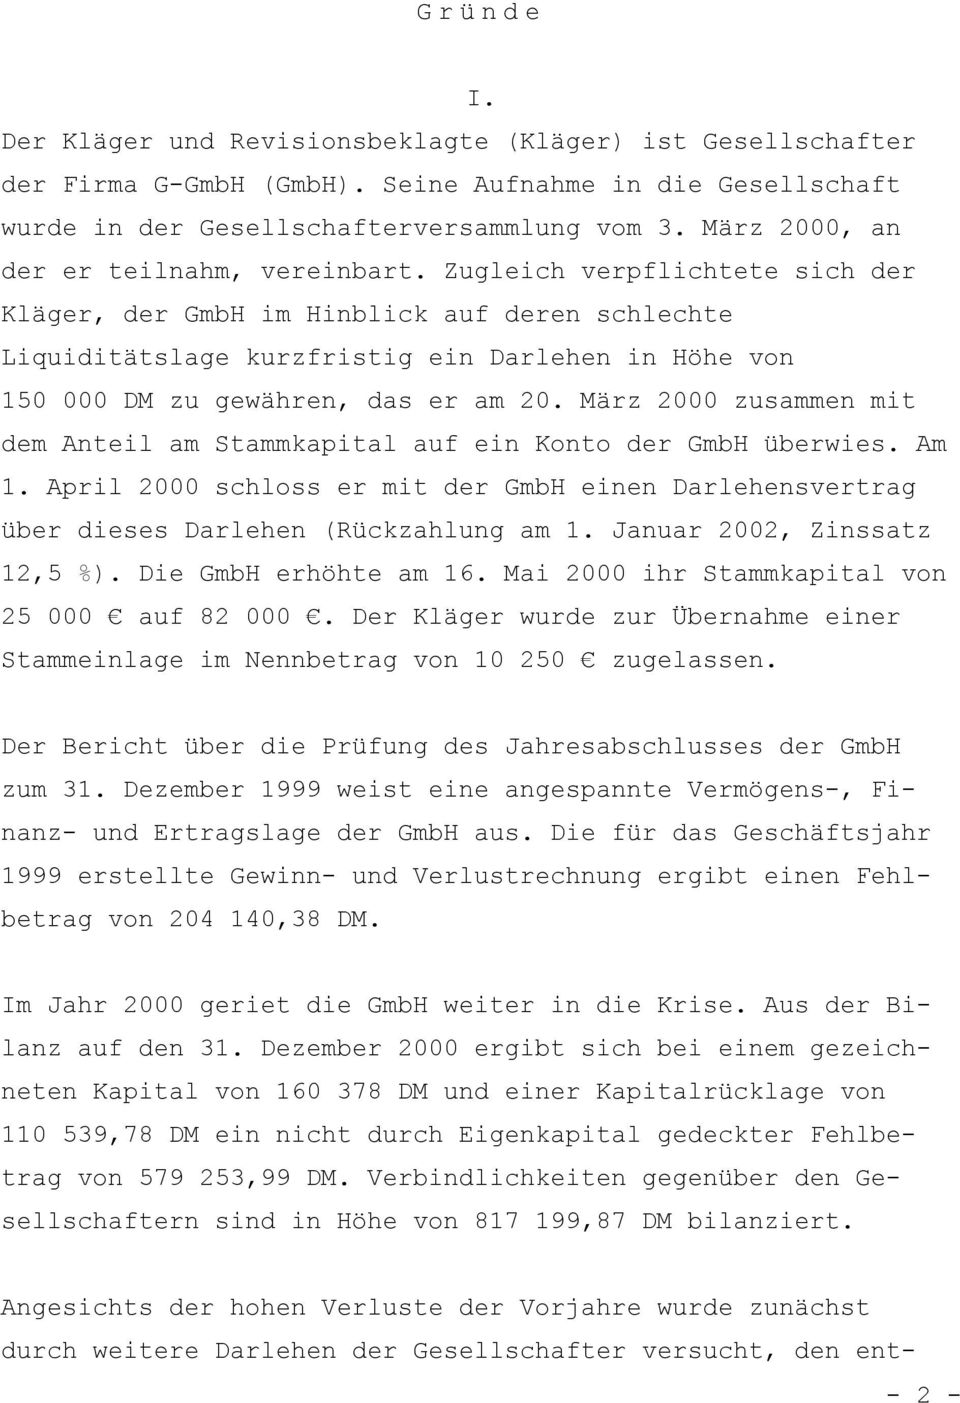 Zugleich verpflichtete sich der Kläger, der GmbH im Hinblick auf deren schlechte Liquiditätslage kurzfristig ein Darlehen in Höhe von 150 000 DM zu gewähren, das er am 20.